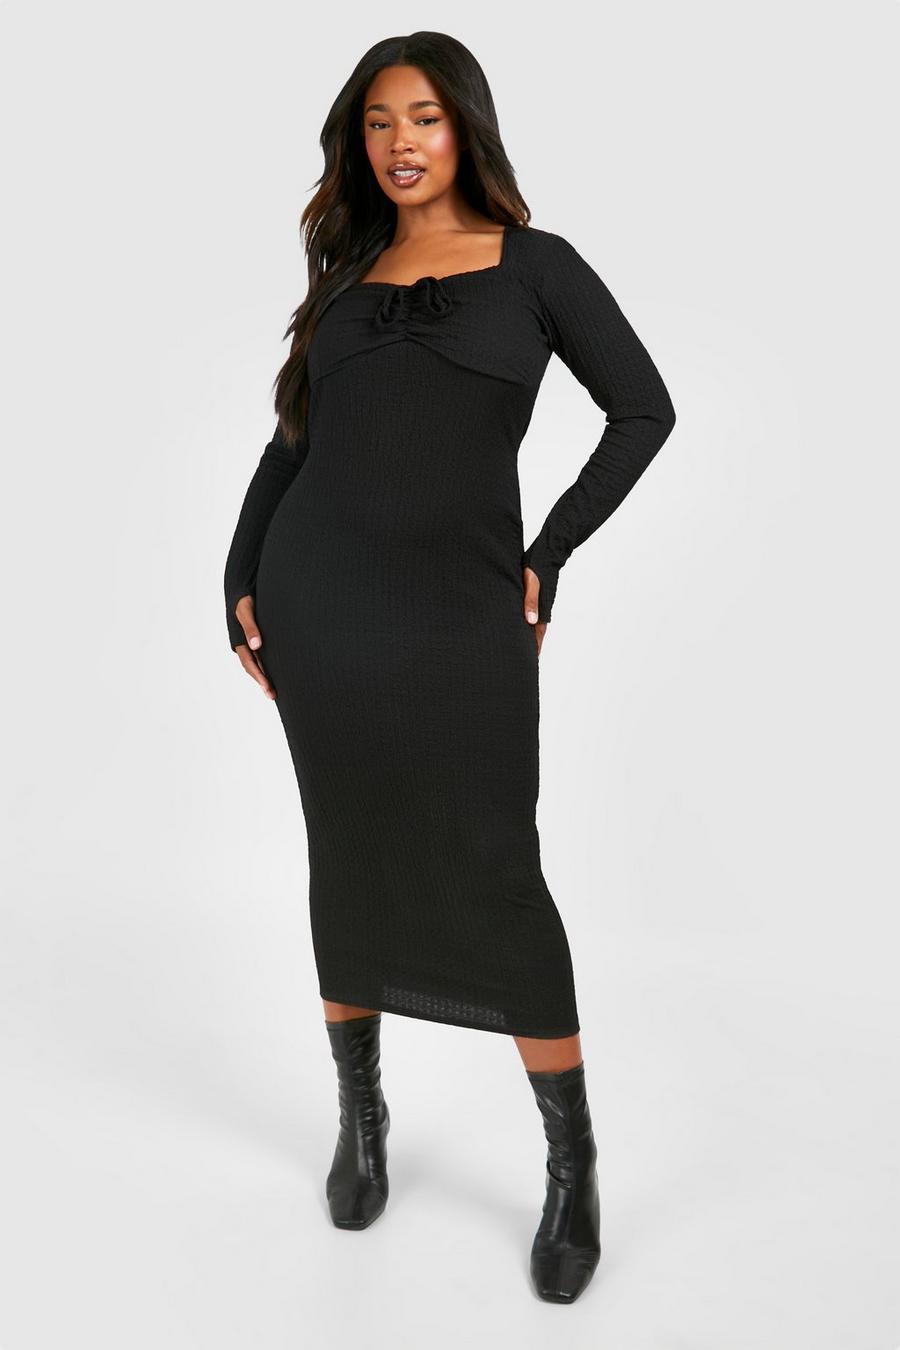 Plus Split Back Hem Knot Detail Dress  Plus size maxi dresses, Plus size  fashion, Black sheath dress